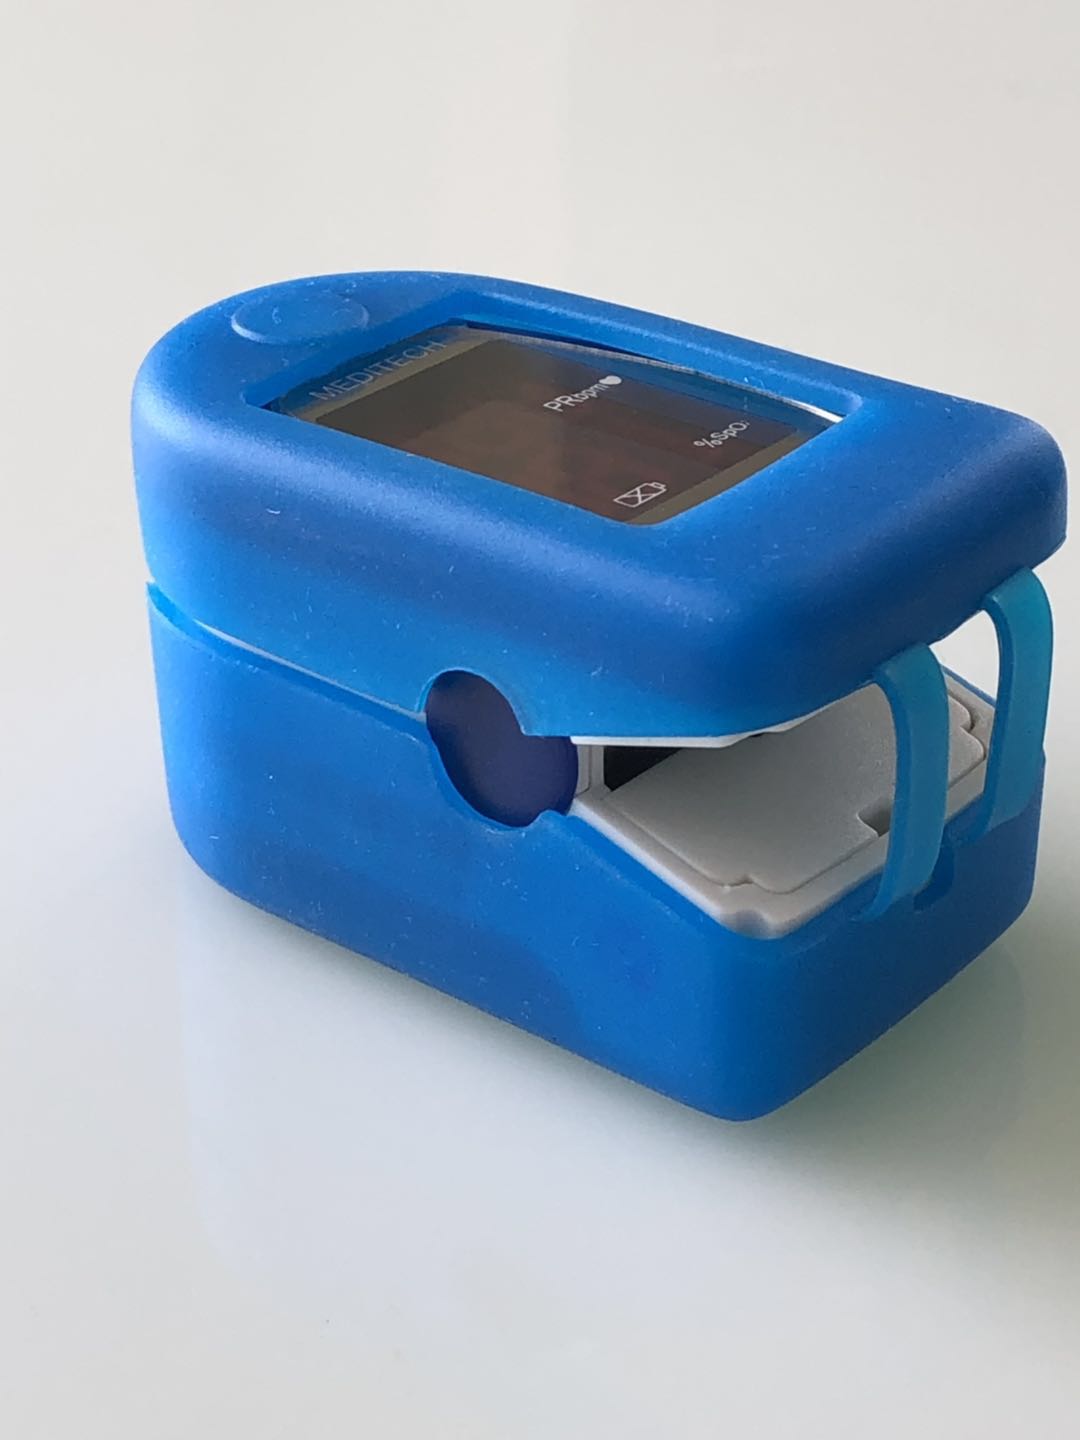 Silicon case for pulse oximeter